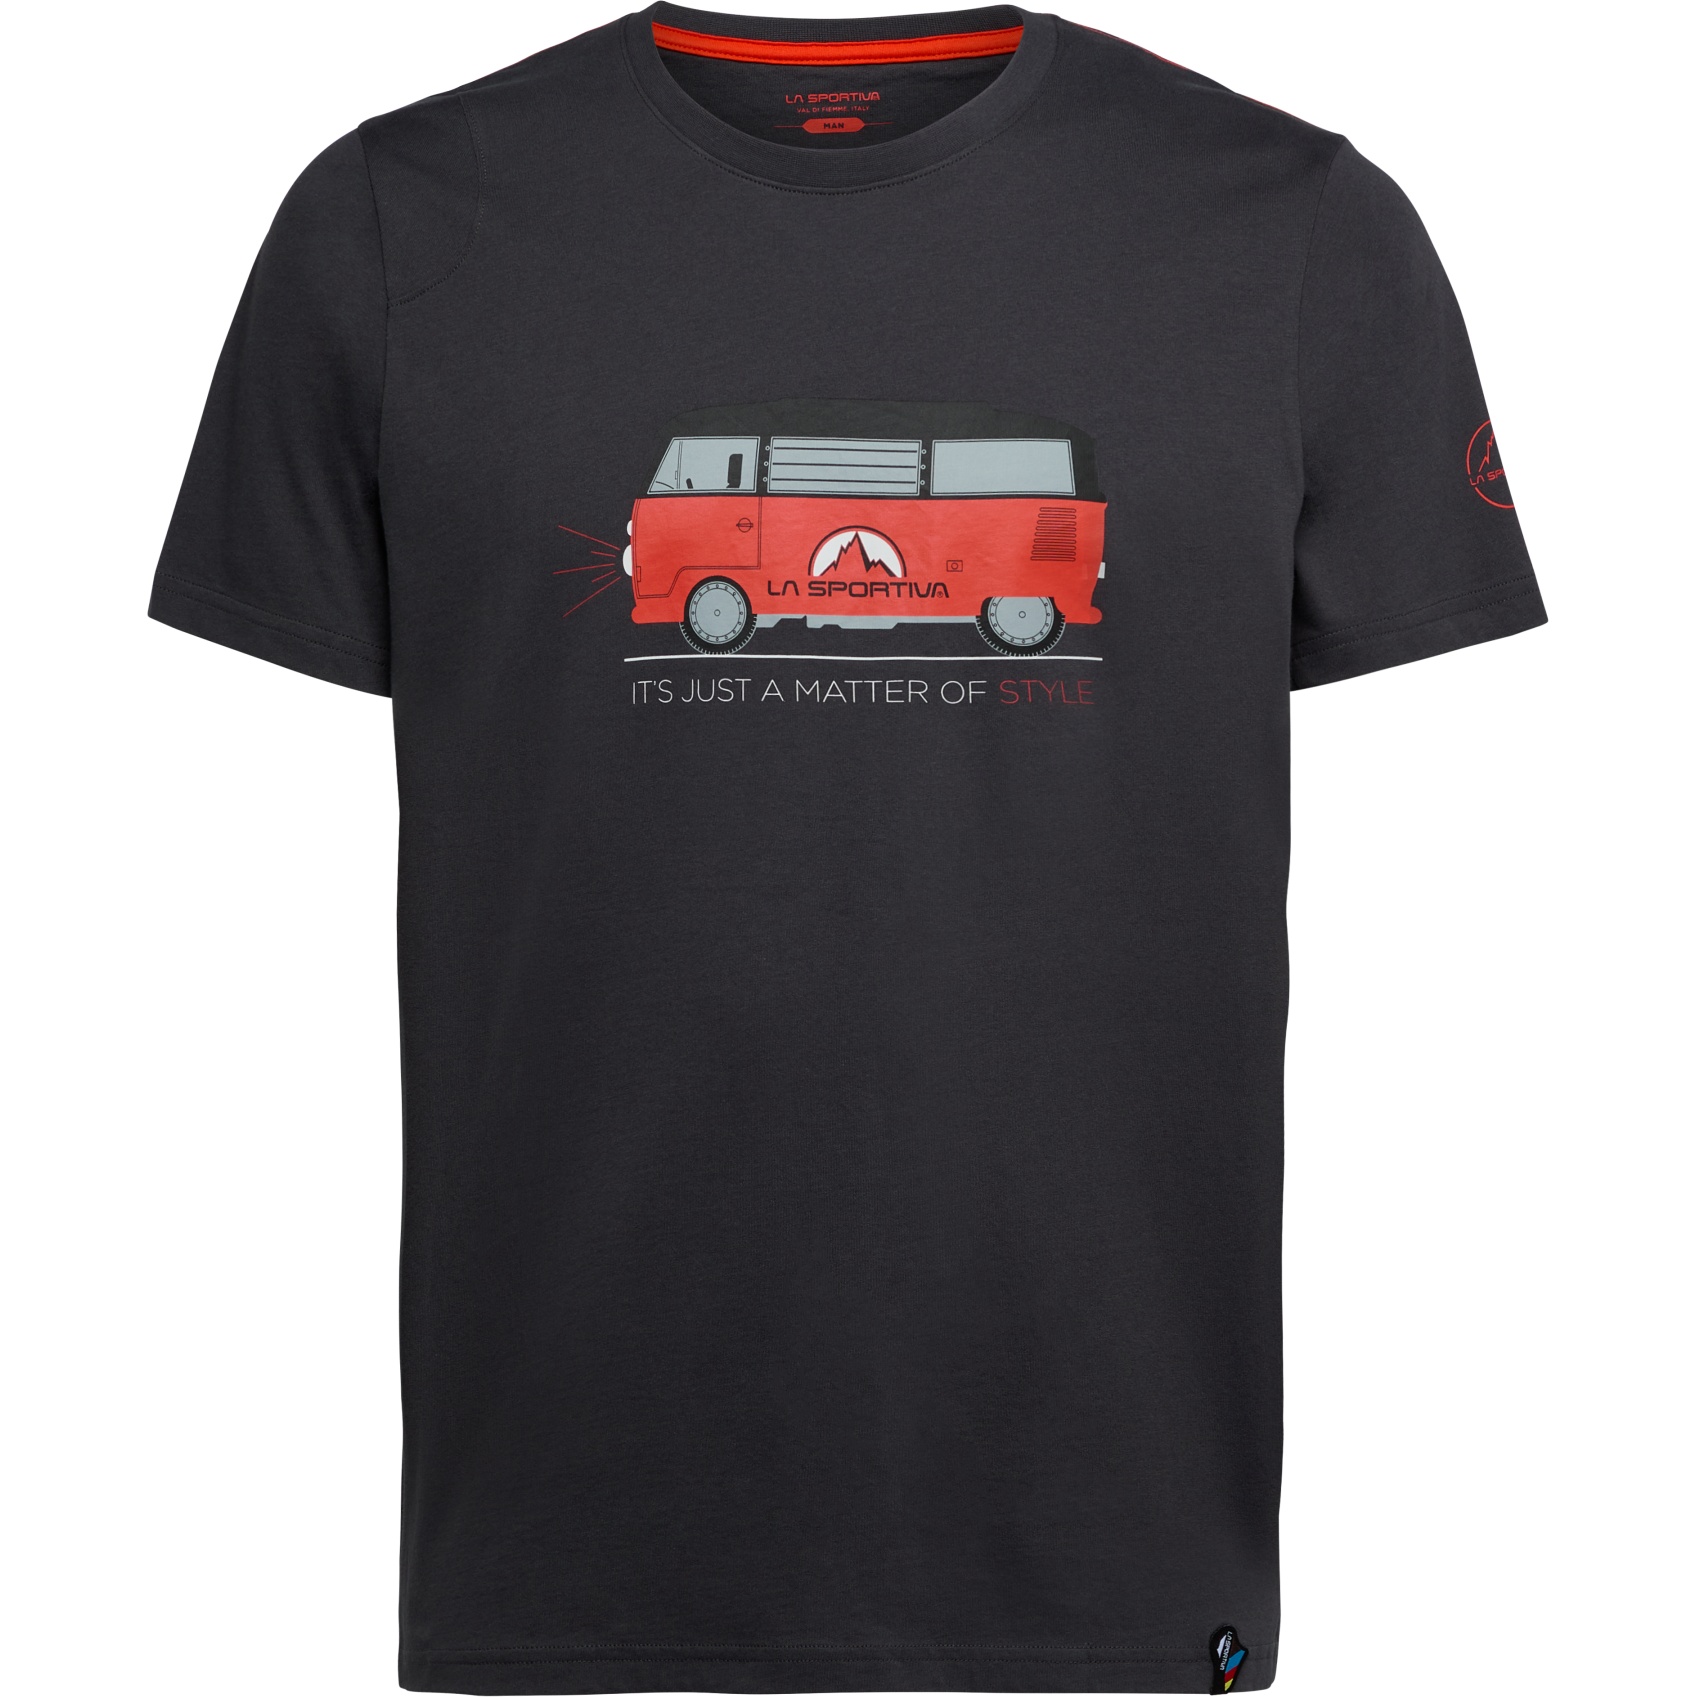 Produktbild von La Sportiva Van T-Shirt Herren - Carbon/Cherry Tomato